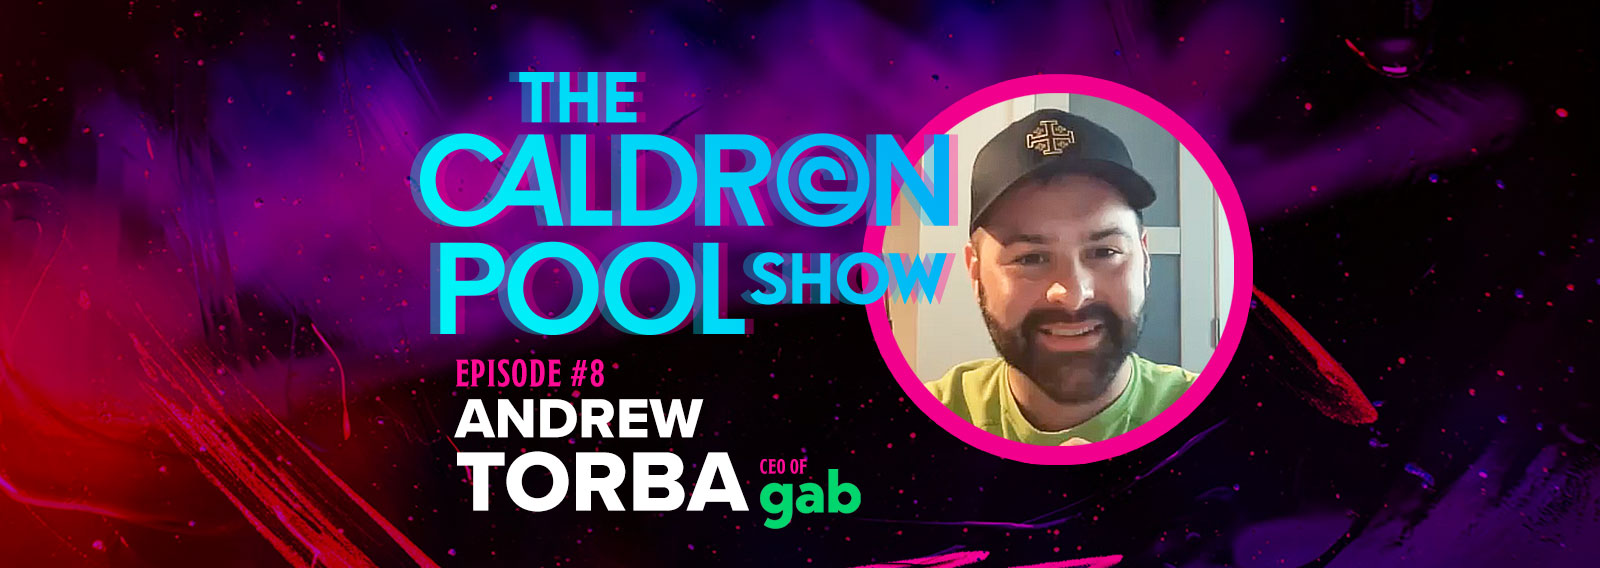 The Caldron Pool Show: #8 – Andrew Torba